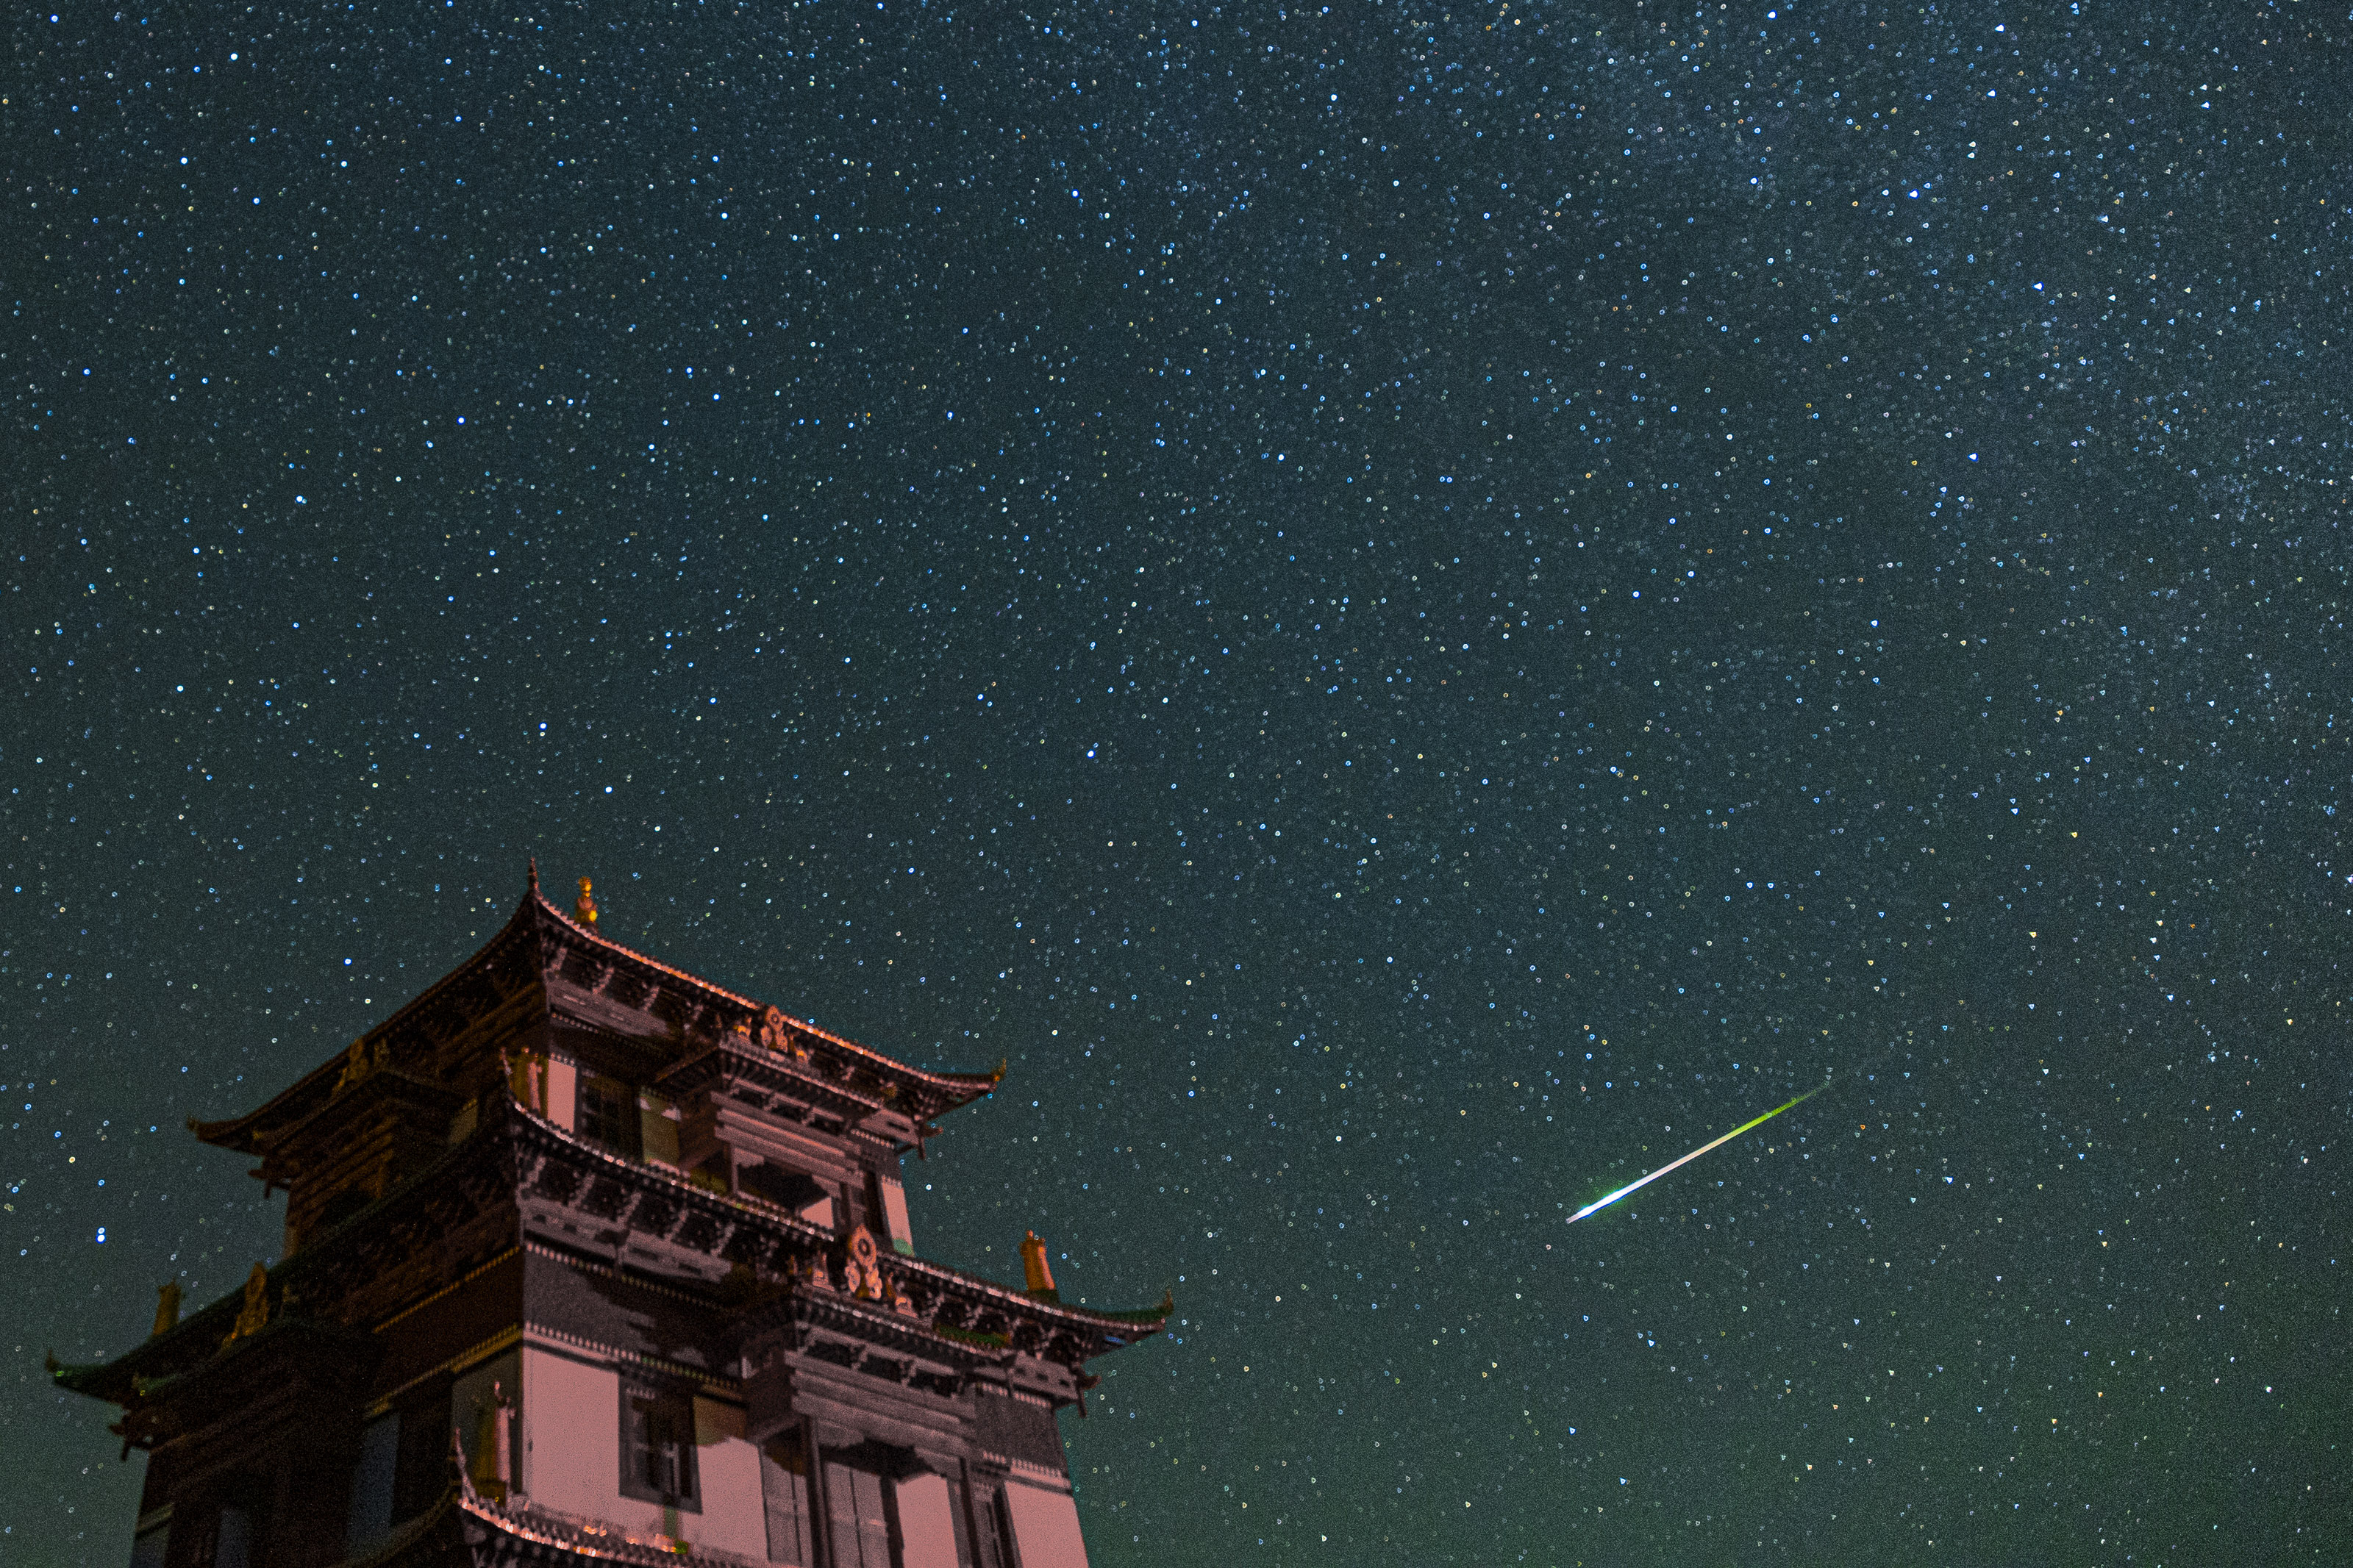 Ein großes Gebäude auf der linken Seite und ein leuchtend grün-weißer Perseiden-Meteor, der über den sternenübersäten Himmel streift.